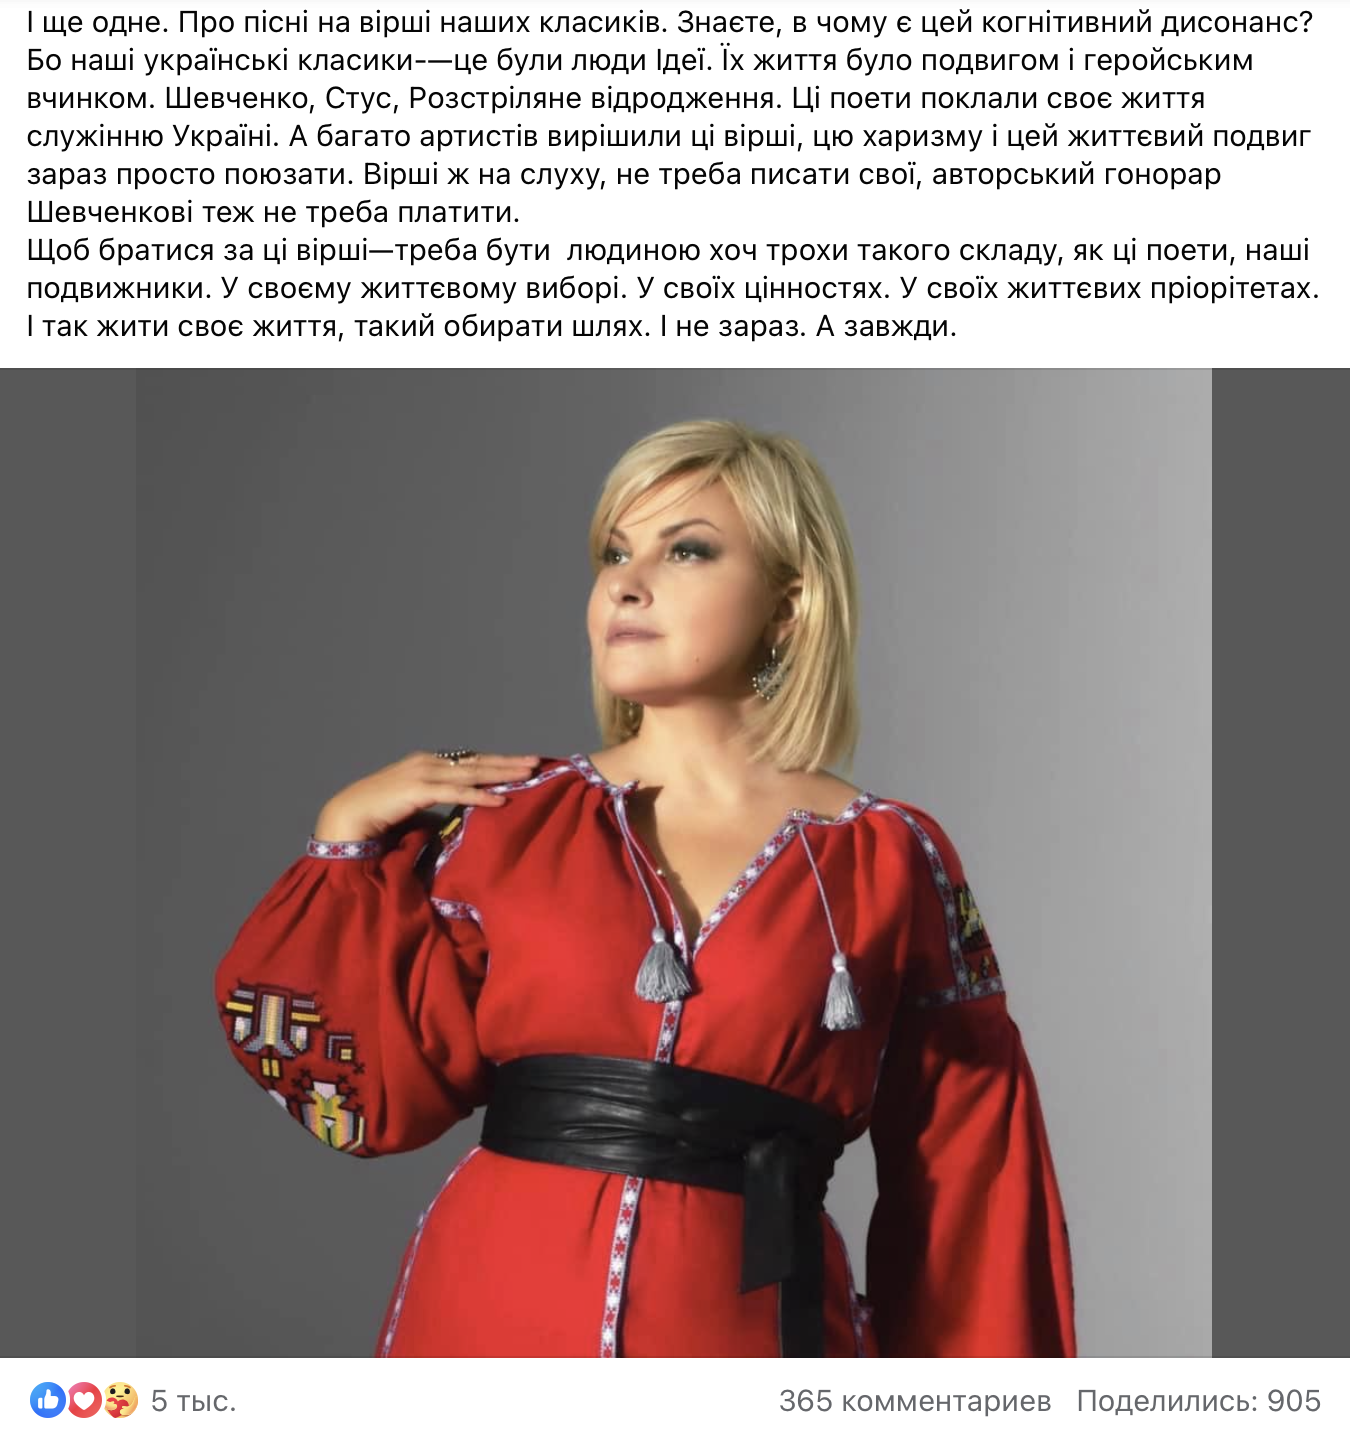 Марія Бурмака назвала цинічну причину, чому українські зірки раптом заспівали вірші Шевченка: це когнітивний дисонанс